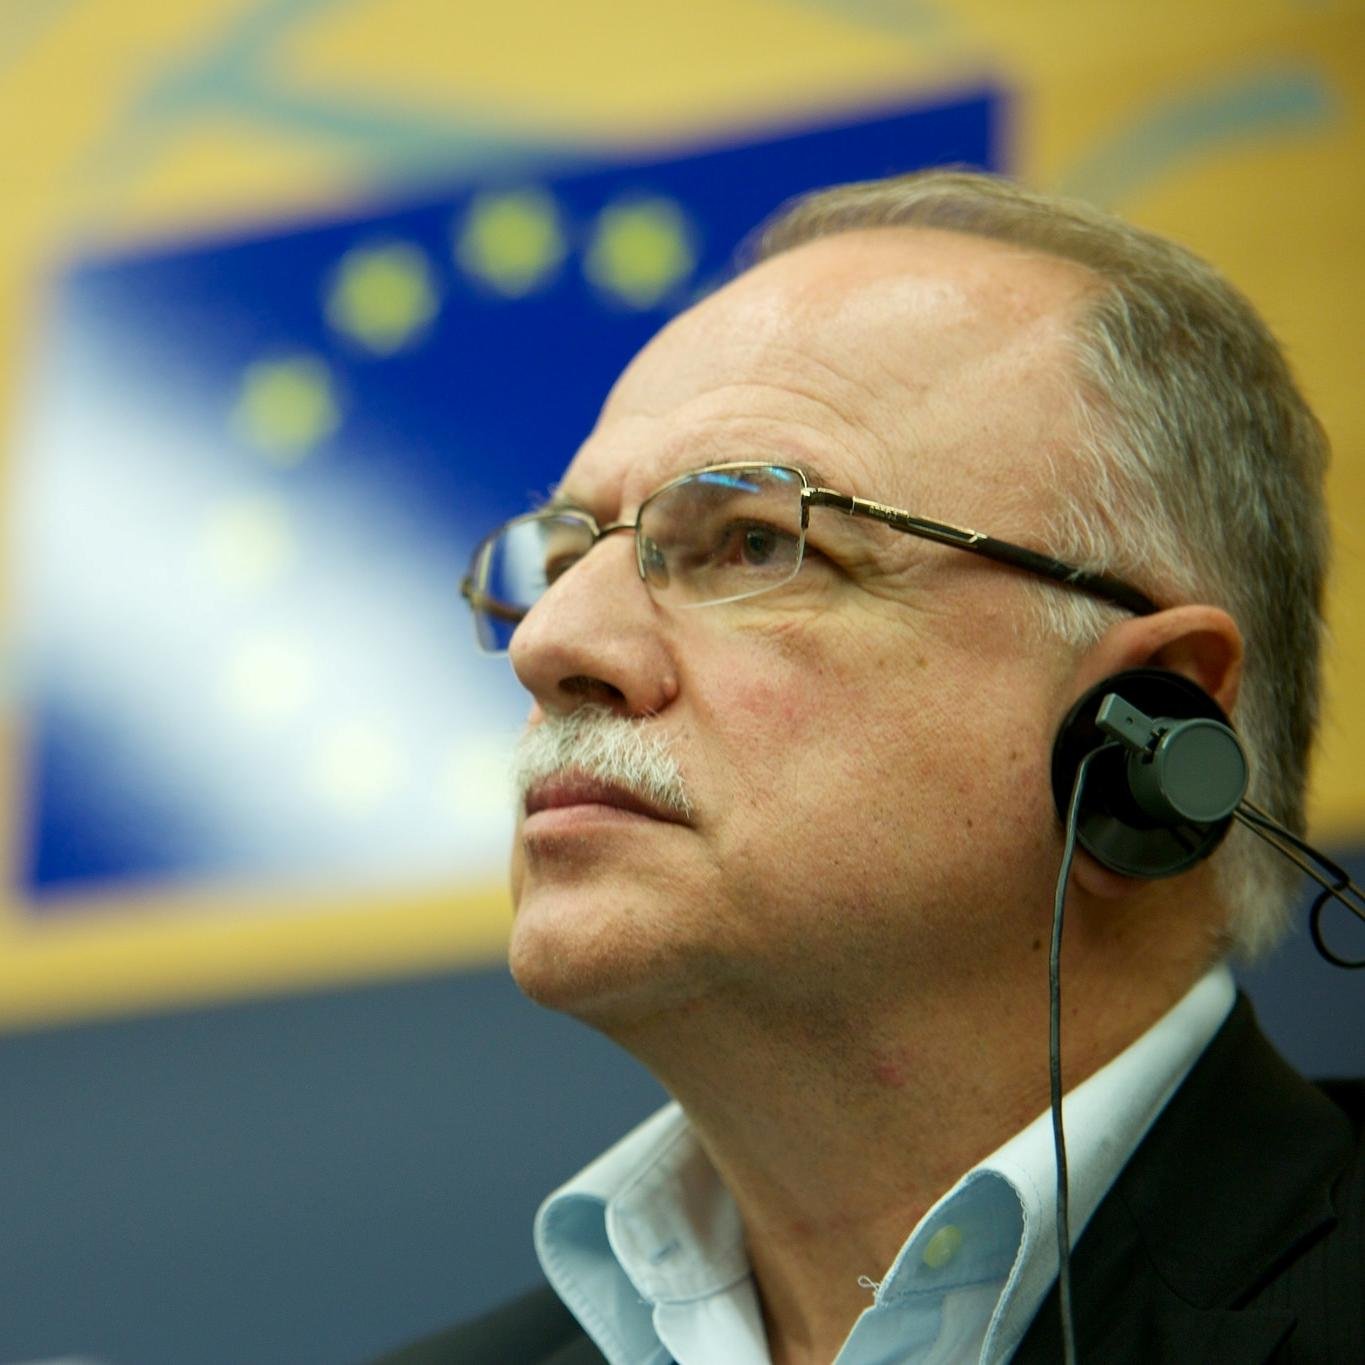 Δημ. Παπαδημούλης: Η Ευρωπαϊκή Ένωση και η Ευρωζώνη χρειάζονται ένα διαφορετικό μοντέλο πολιτικής διακυβέρνησης